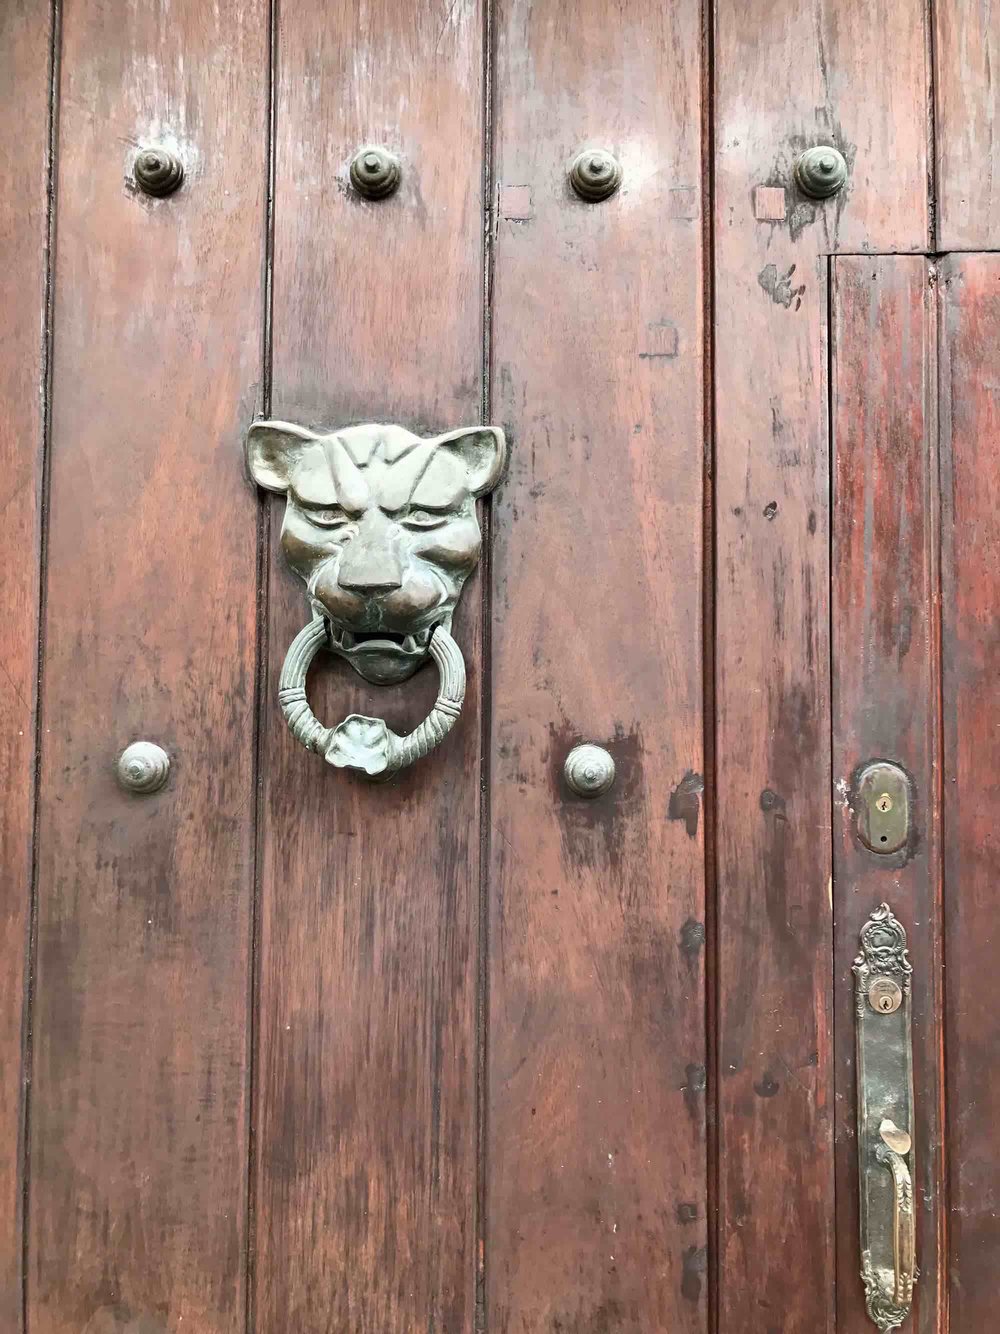 Lion door knocker | Doors and Door Knockers of Cartagena, Colombia | pictures of Cartagena, Colombia